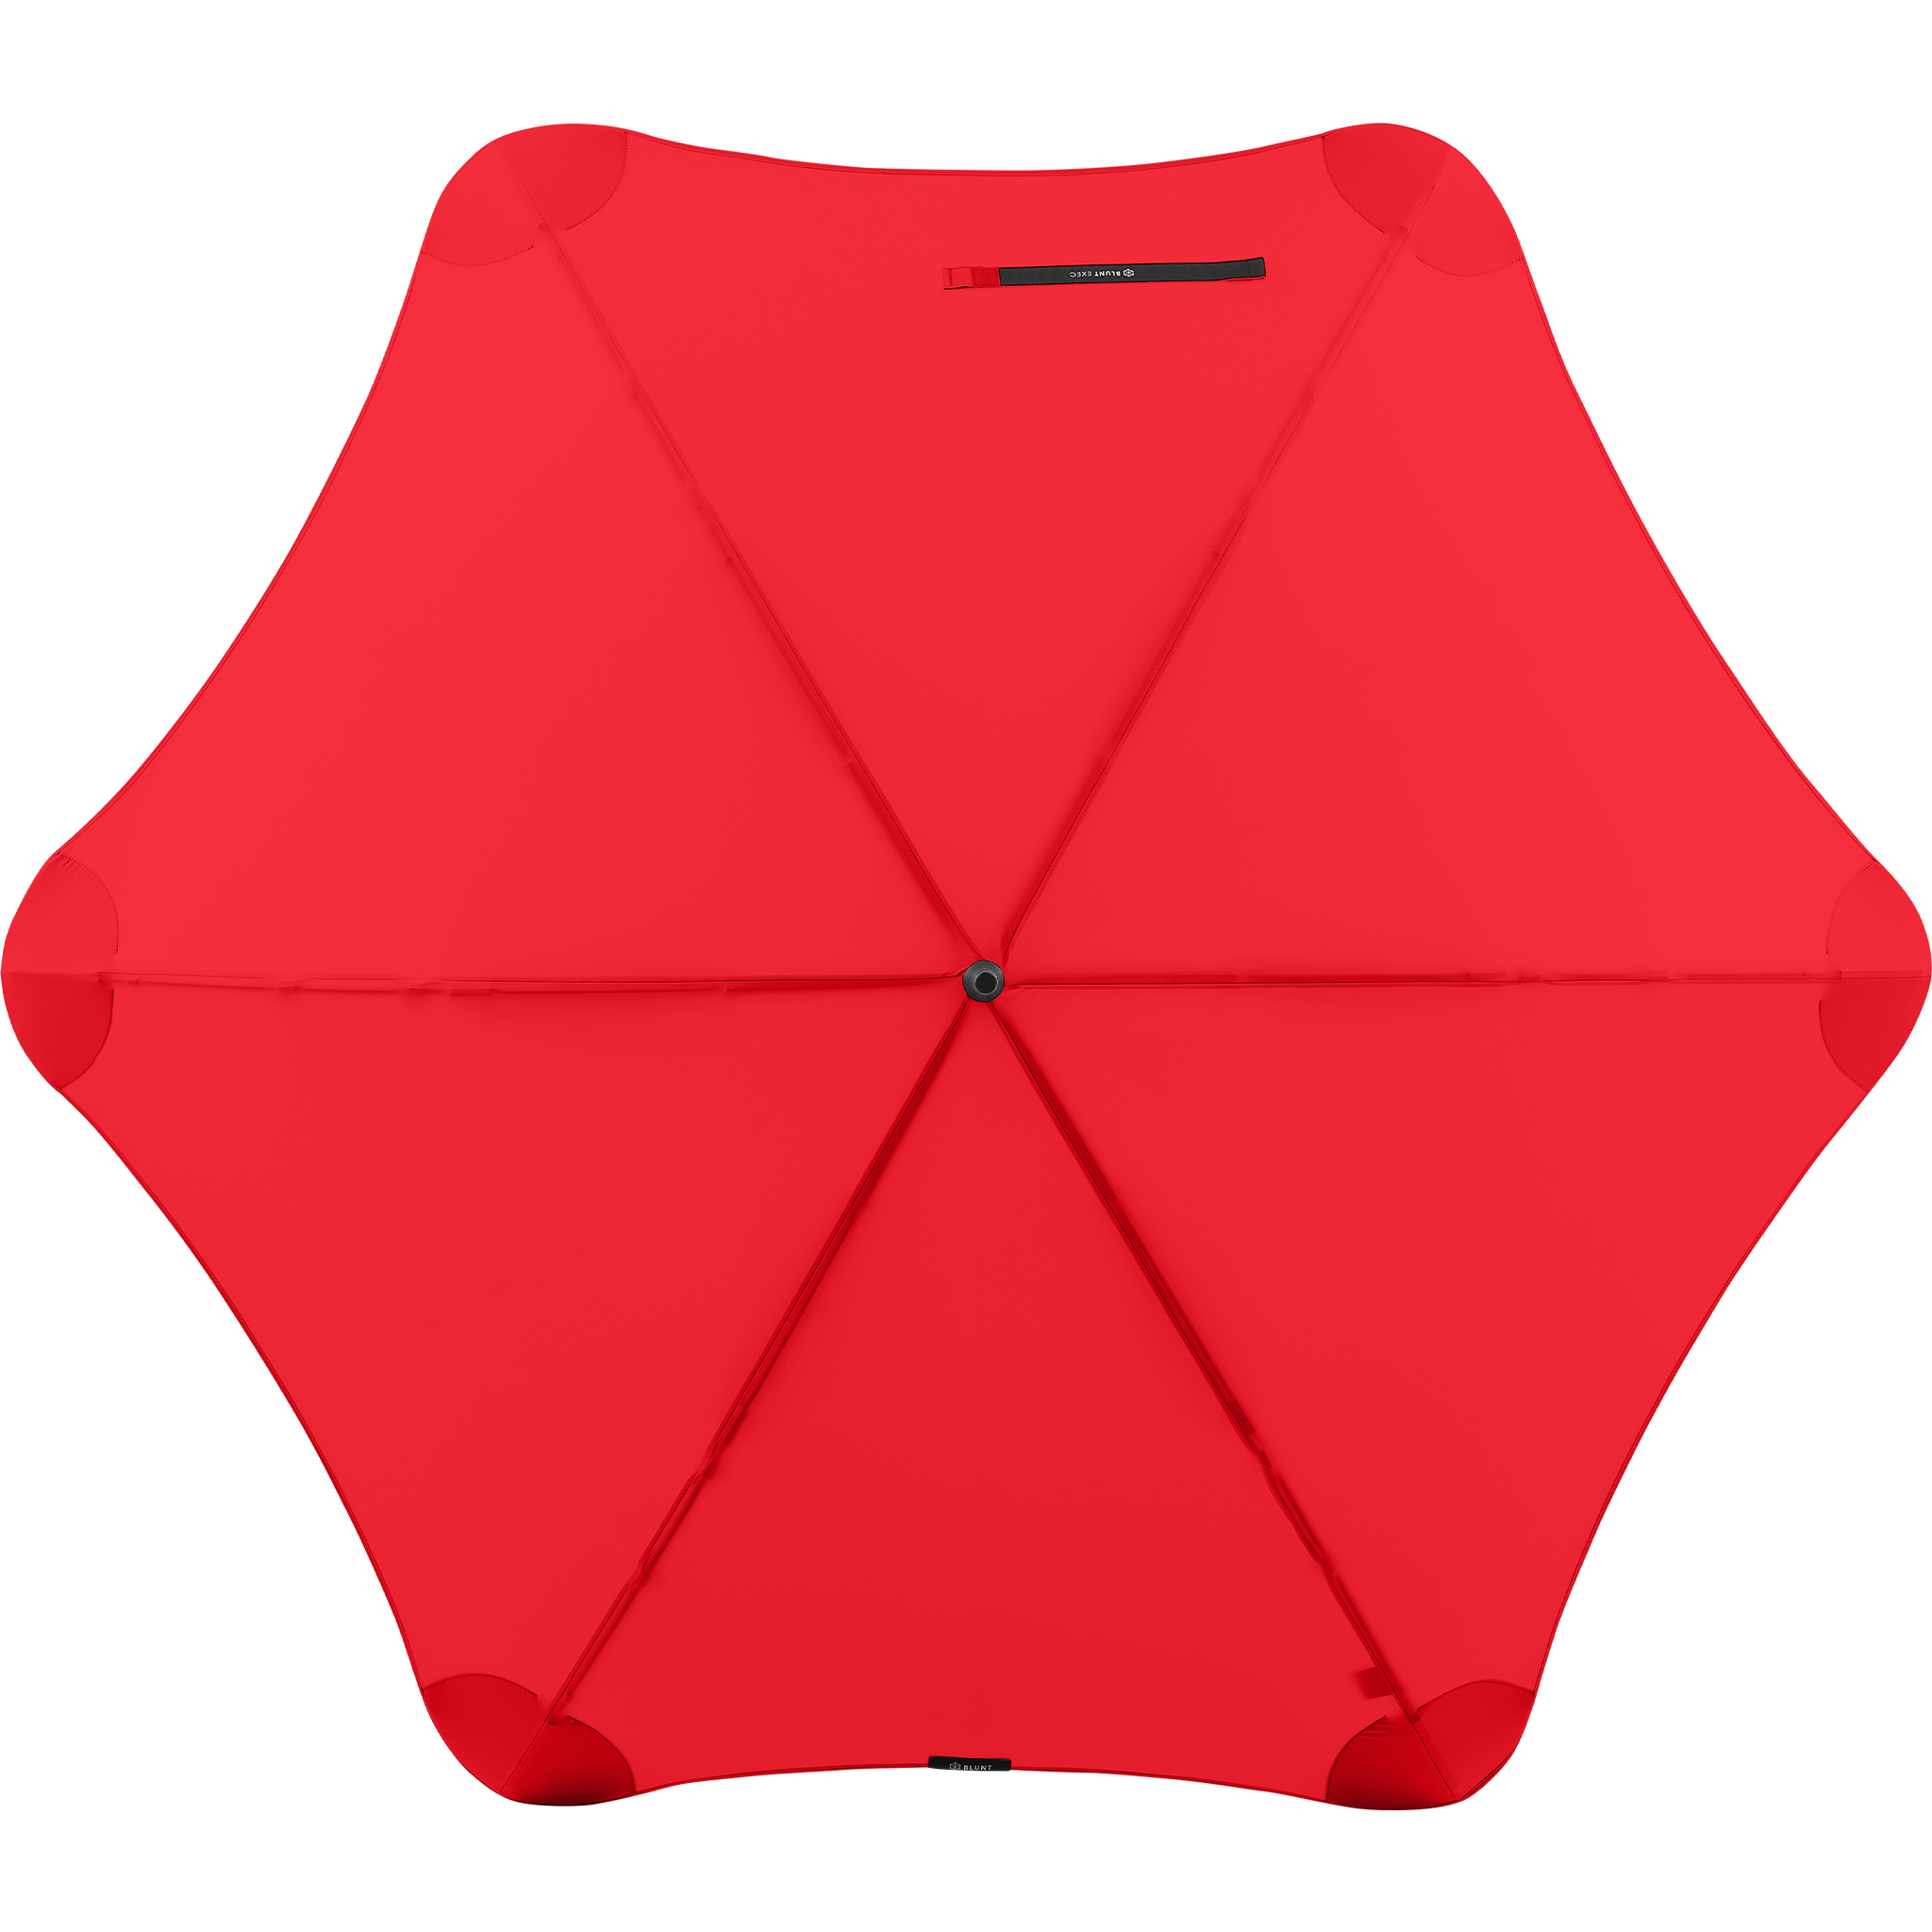 2020 Red Exec Blunt Umbrella Top View